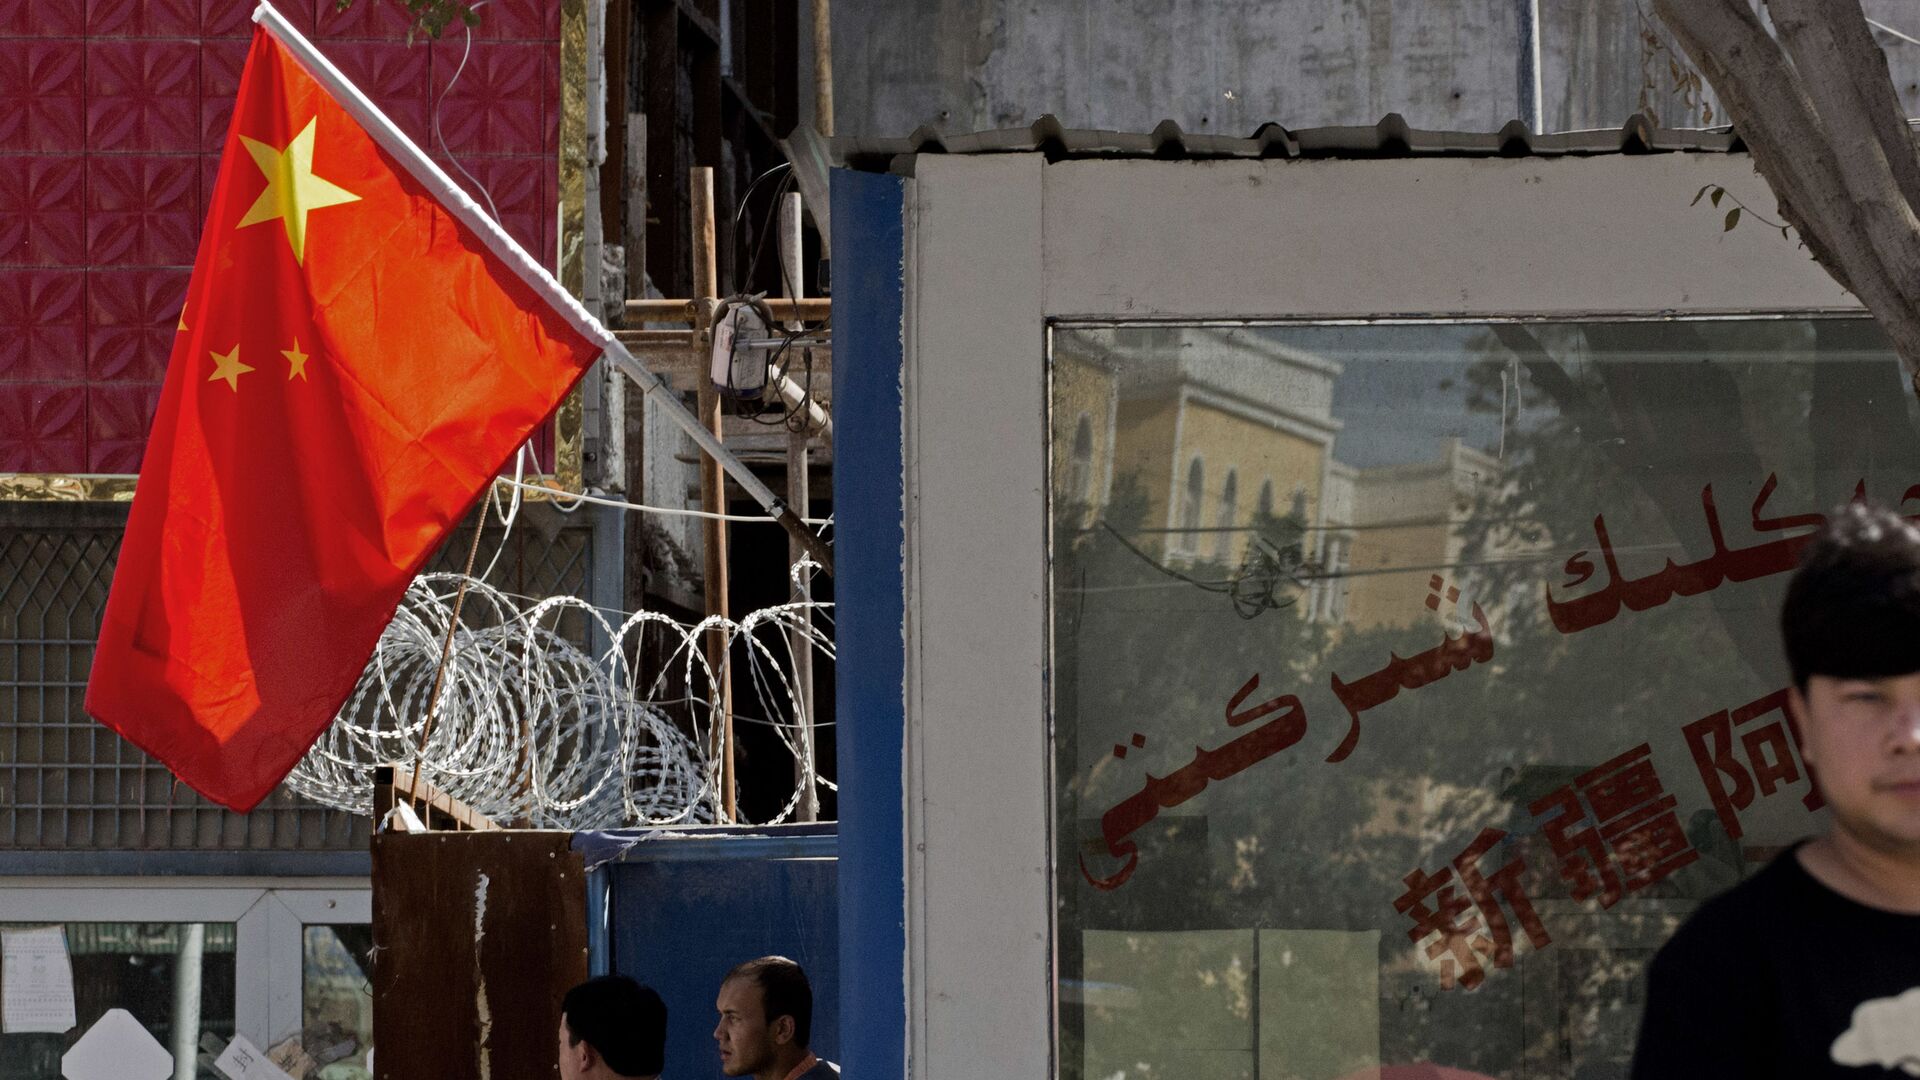 Người dân đứng gần hàng rào có dây thép gai và quốc kỳ Trung Quốc ở khu vực Tân Cương, miền tây Trung Quốc. - Sputnik Việt Nam, 1920, 16.04.2021